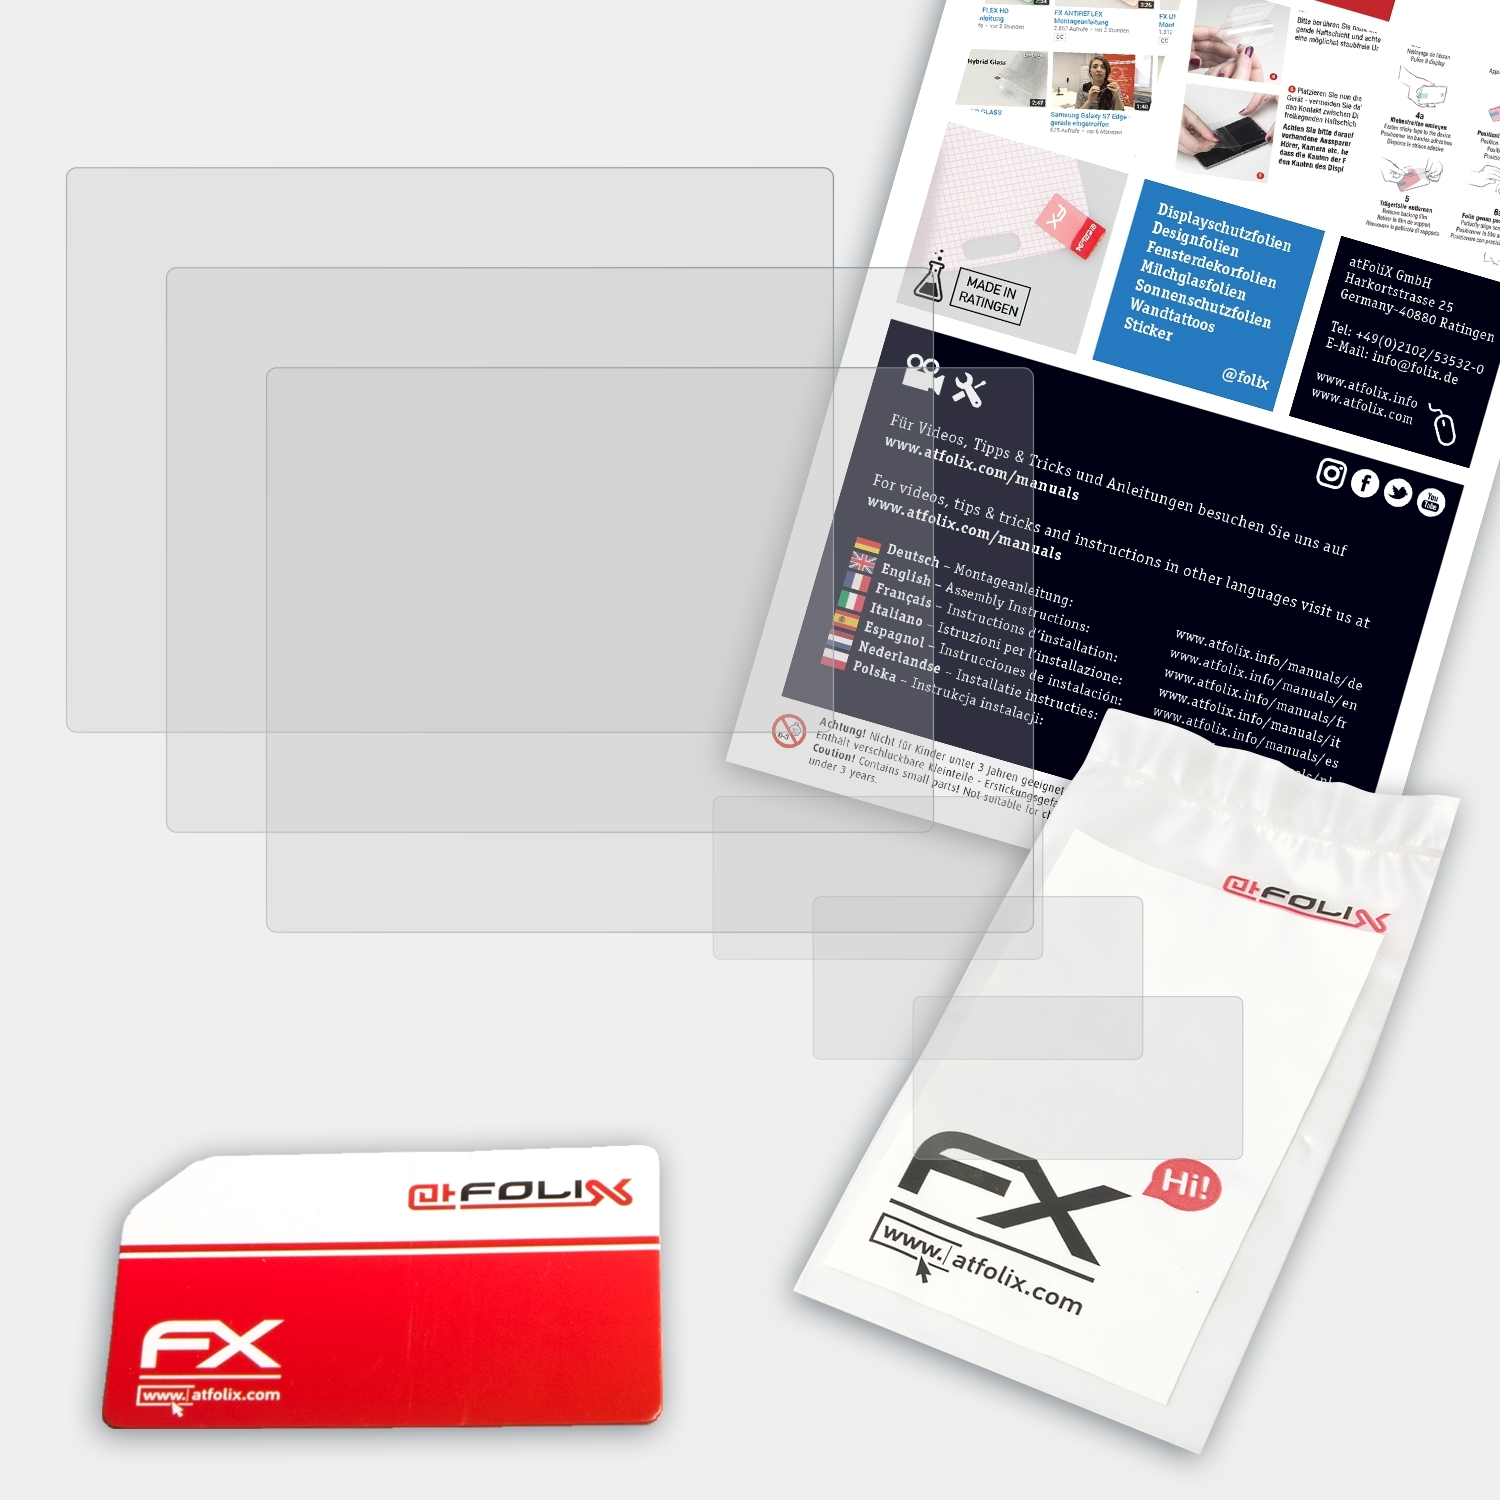 Displayschutz(für FX-Antireflex IV) 3x ATFOLIX Sony DSC-RX10